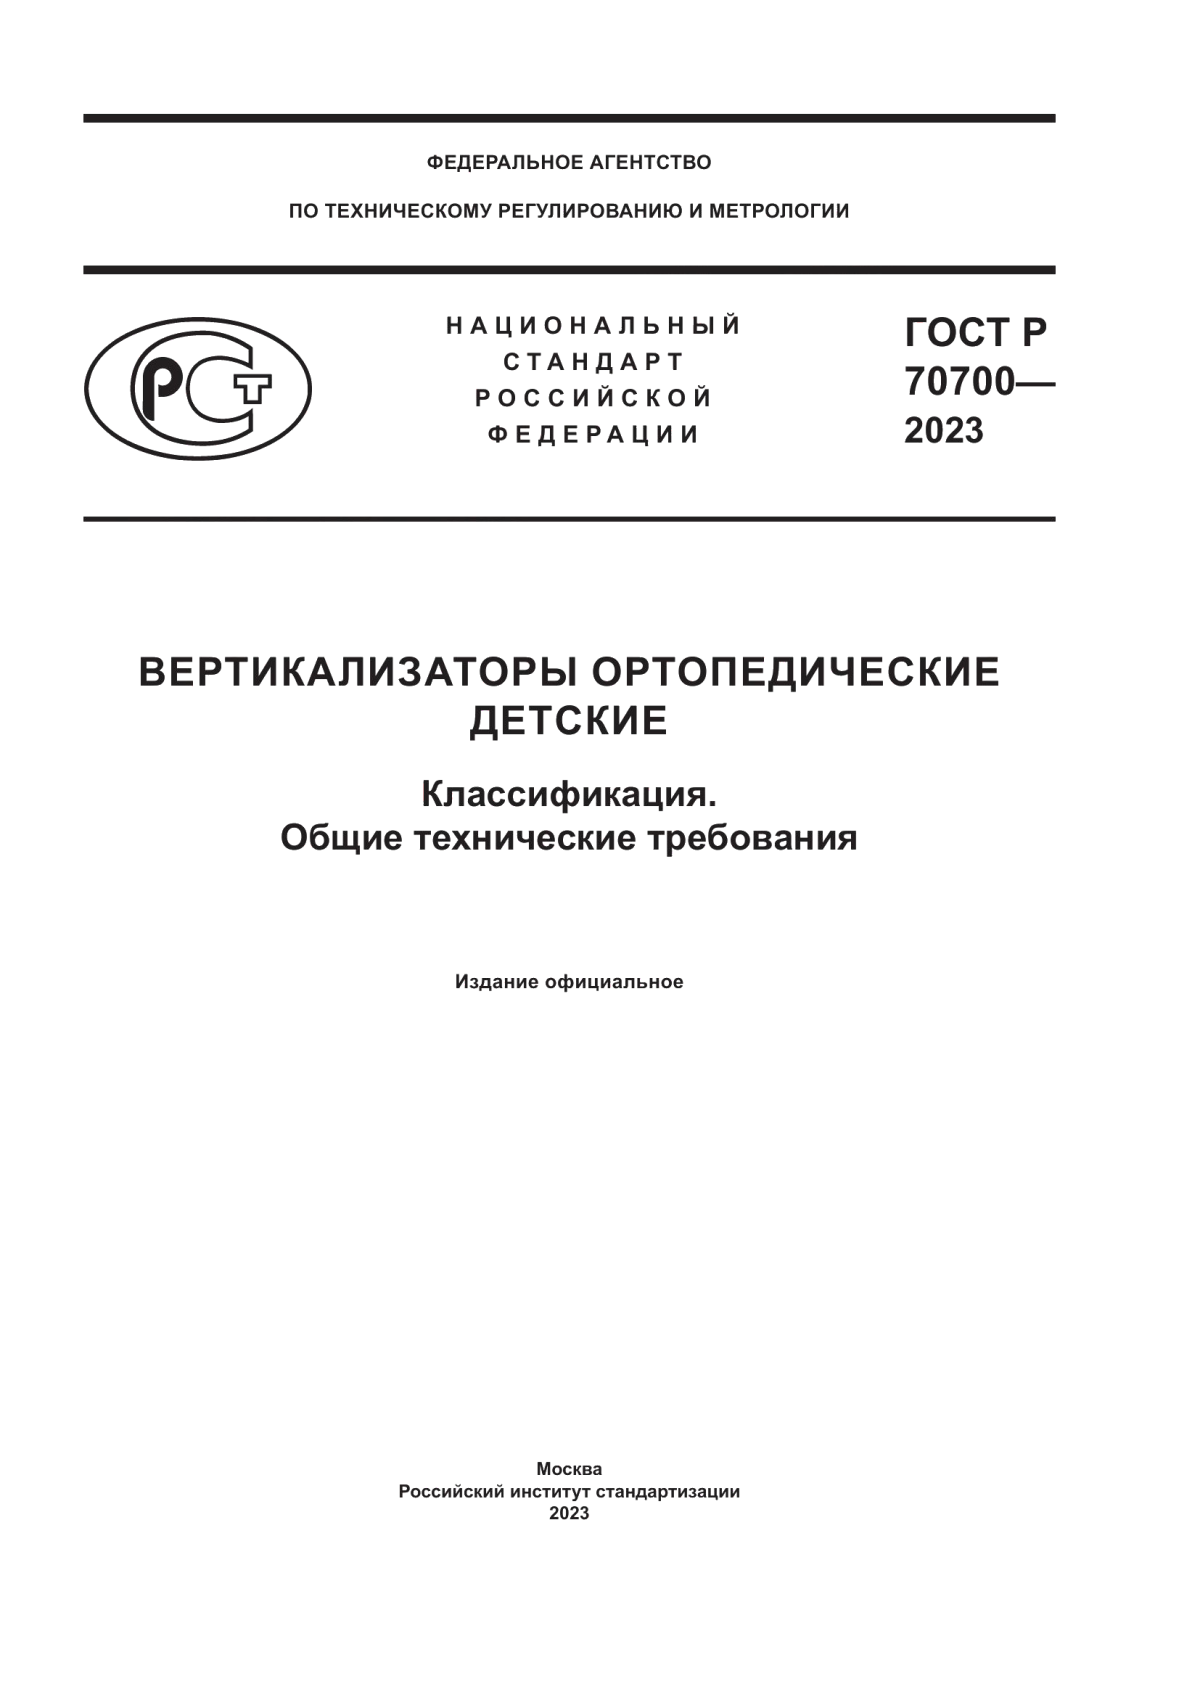 ГОСТ Р 70700-2023 Вертикализаторы ортопедические детские. Классификация. Общие технические требования